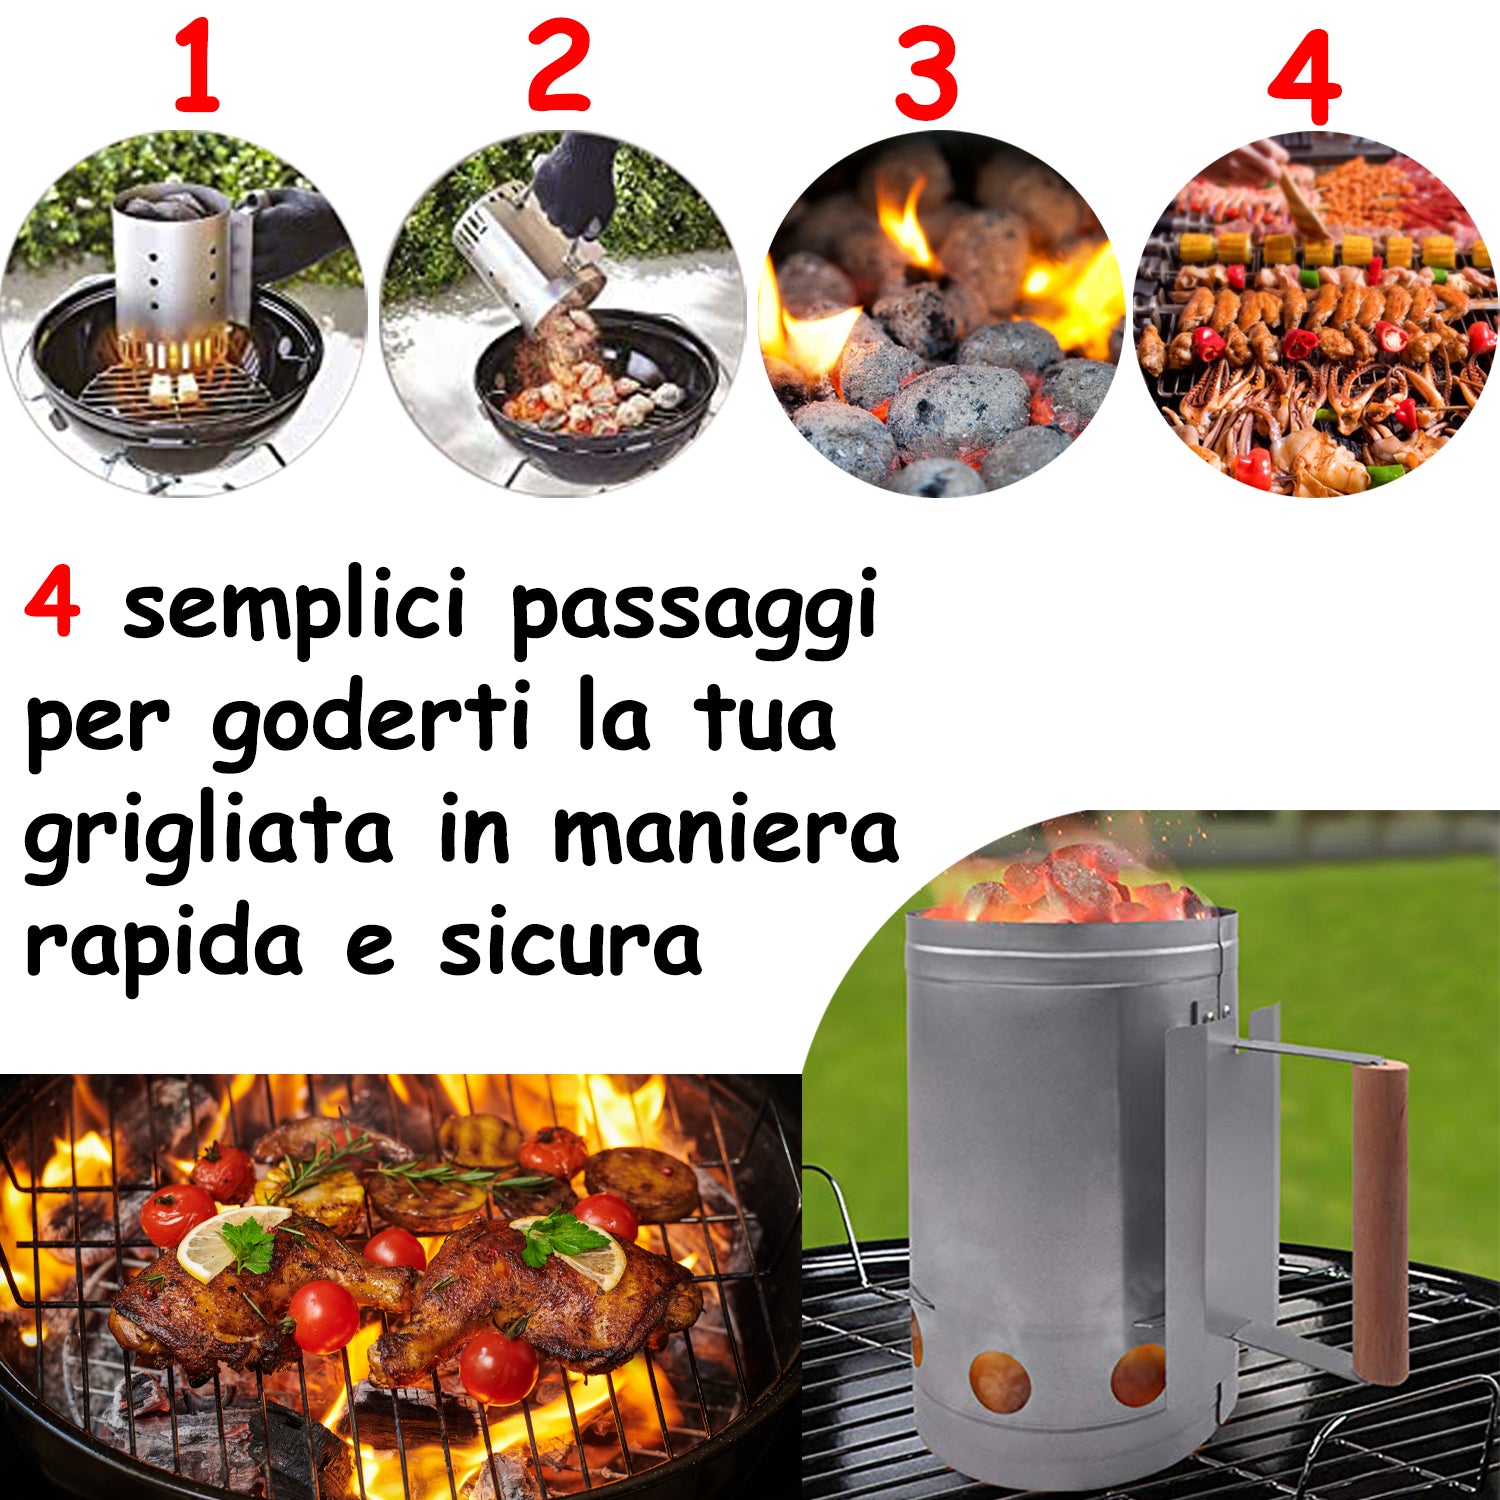 Ciminiera Barbecue Starter BBQ Accendi Fuoco Carbone Carbonella